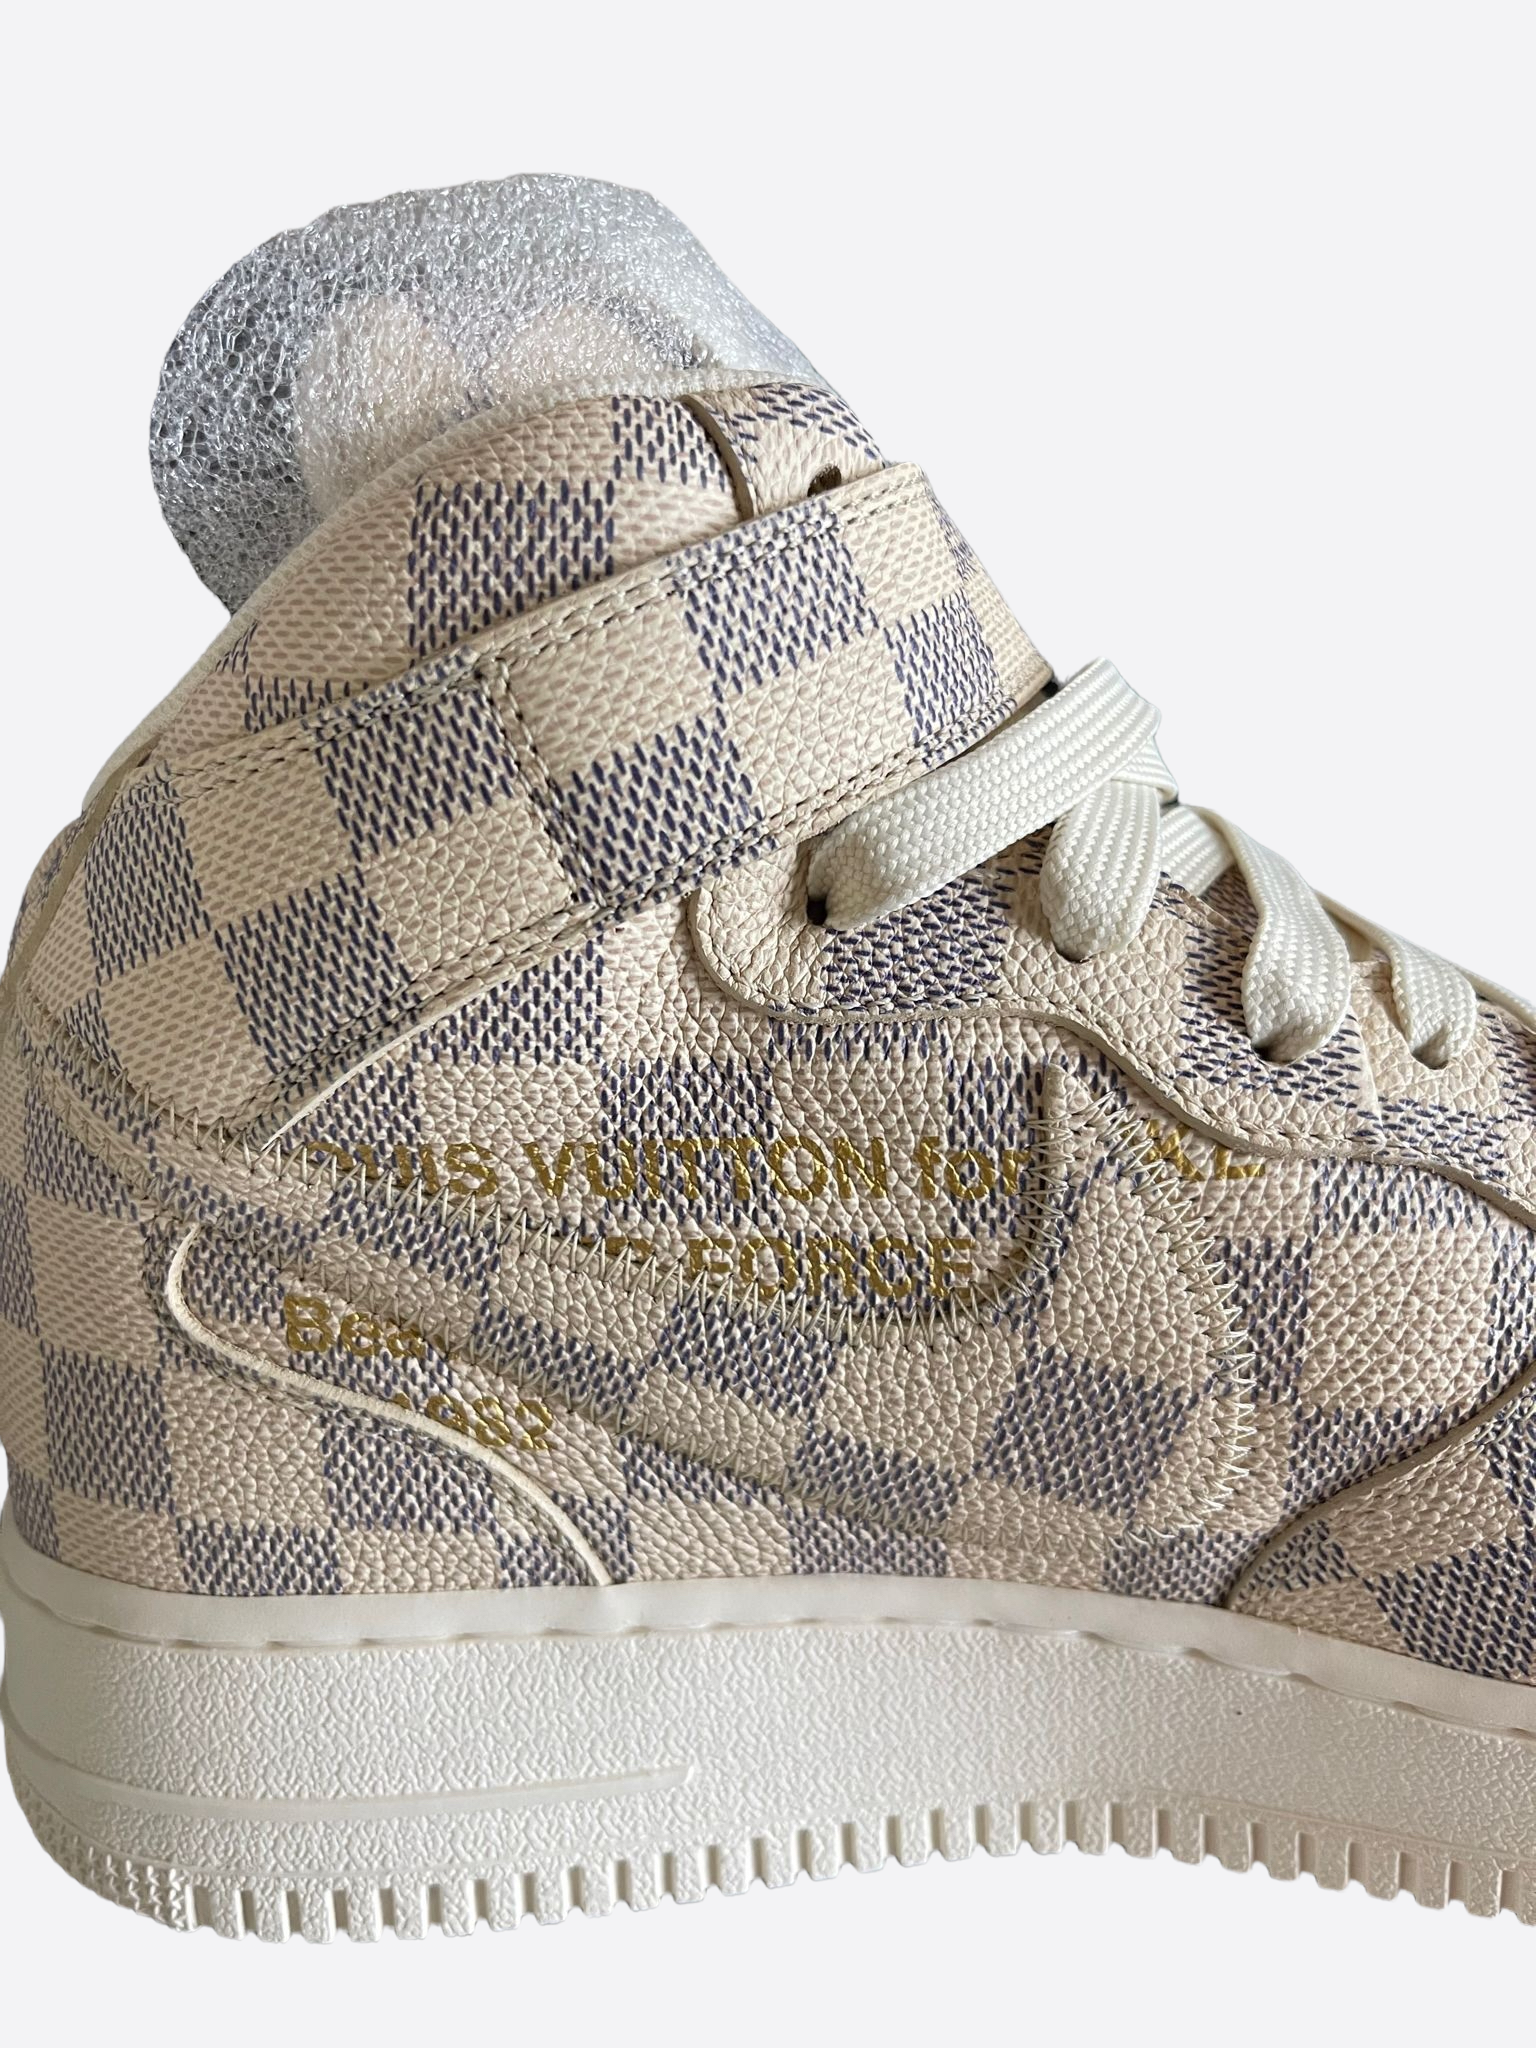 Louis Vuitton Nike Air Force 1 Mid Graffiti Sneaker